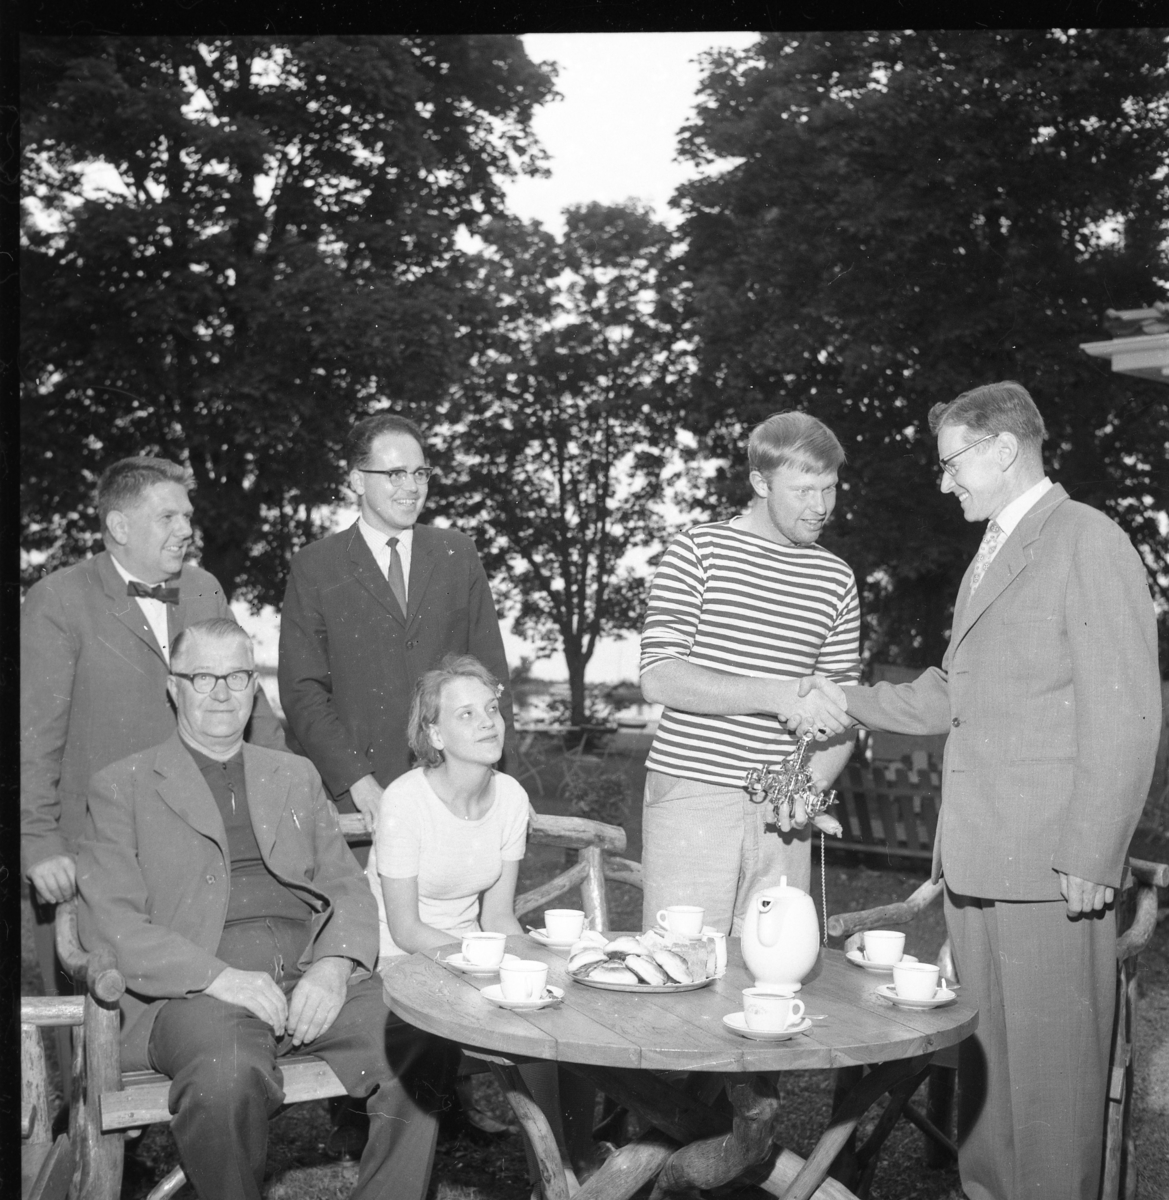 Einar Hafström och okänd flicka sitter vid ett runt bord med kaffekoppar, kaffekanna och bullar. Stående bakom dem från vänster är Sten Roman och Ingmar Lago. Till höger står en ung man i randig tröja med en liten ljuskrona i handen. Han tackar, sannolikt, en kostymklädd äldre man för densamma.